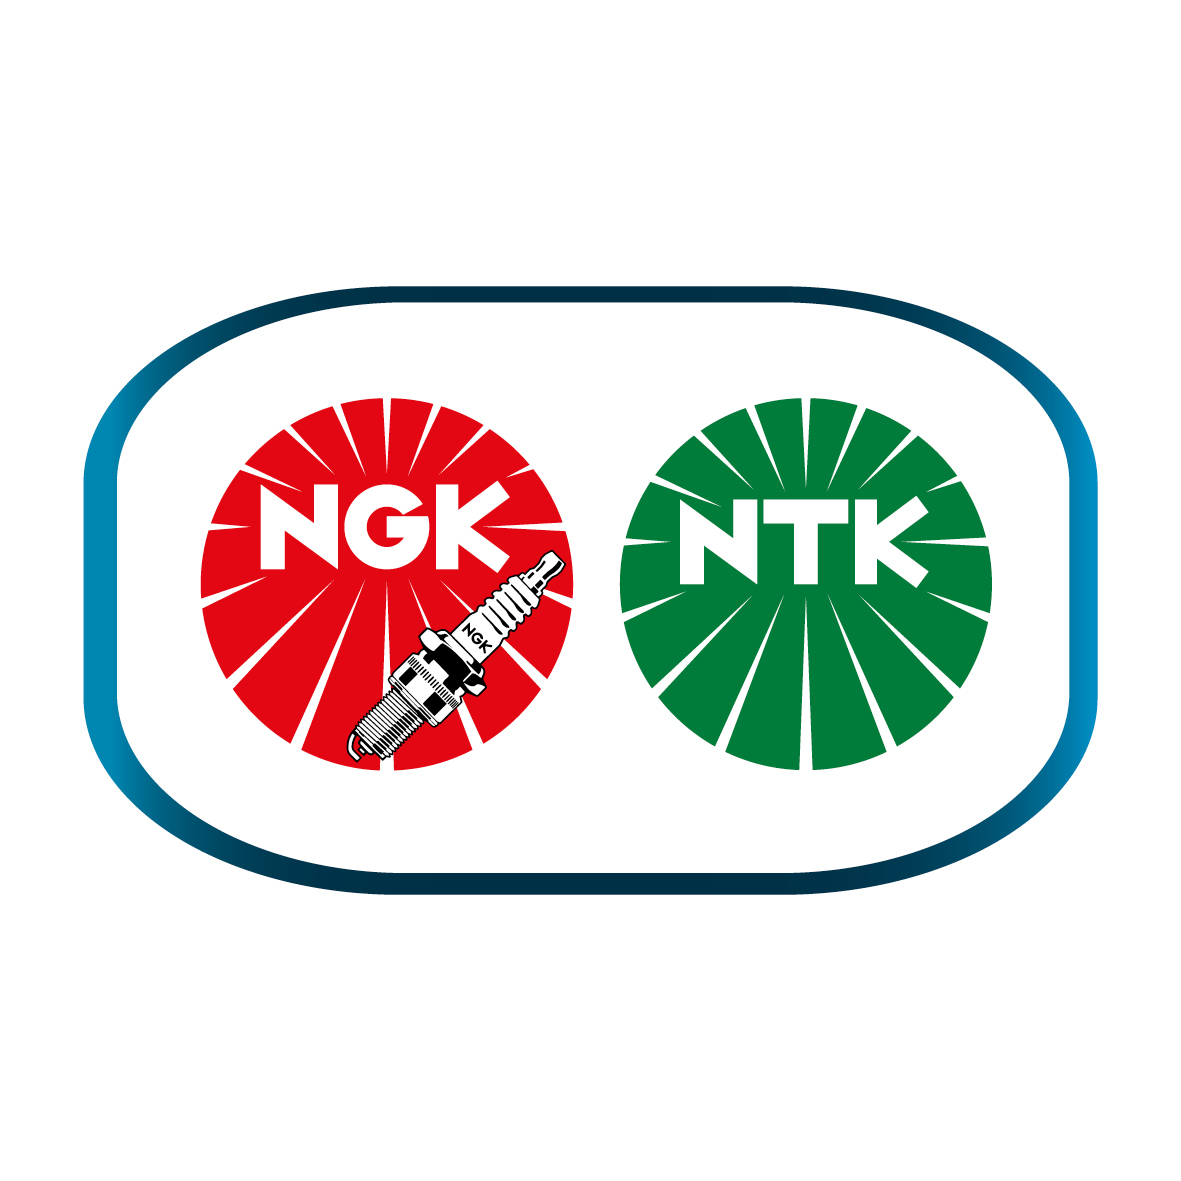 NGK_NTK